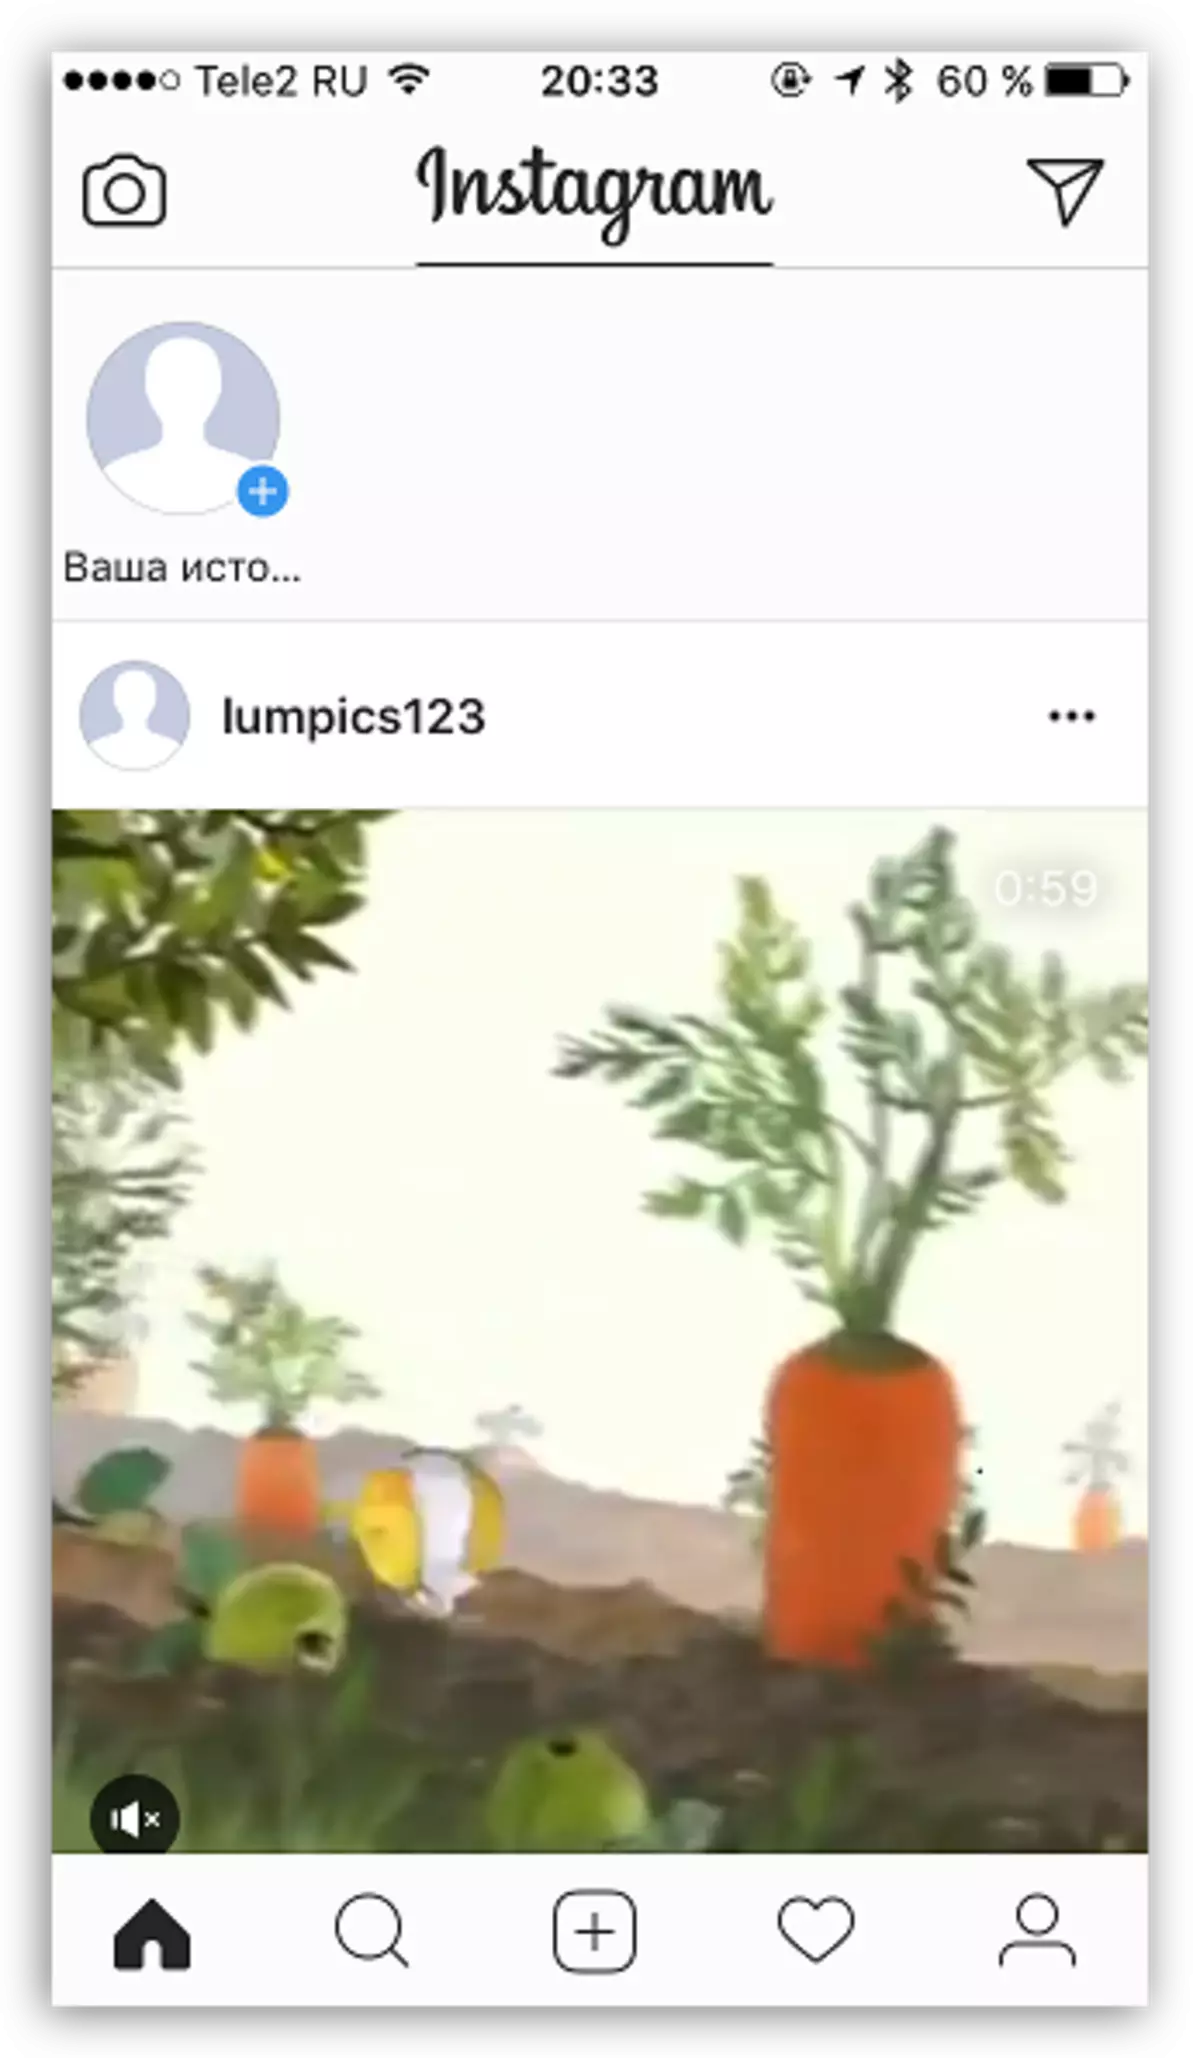 En-Computer'da Instagram Hesabındaki Resim ve Videoları